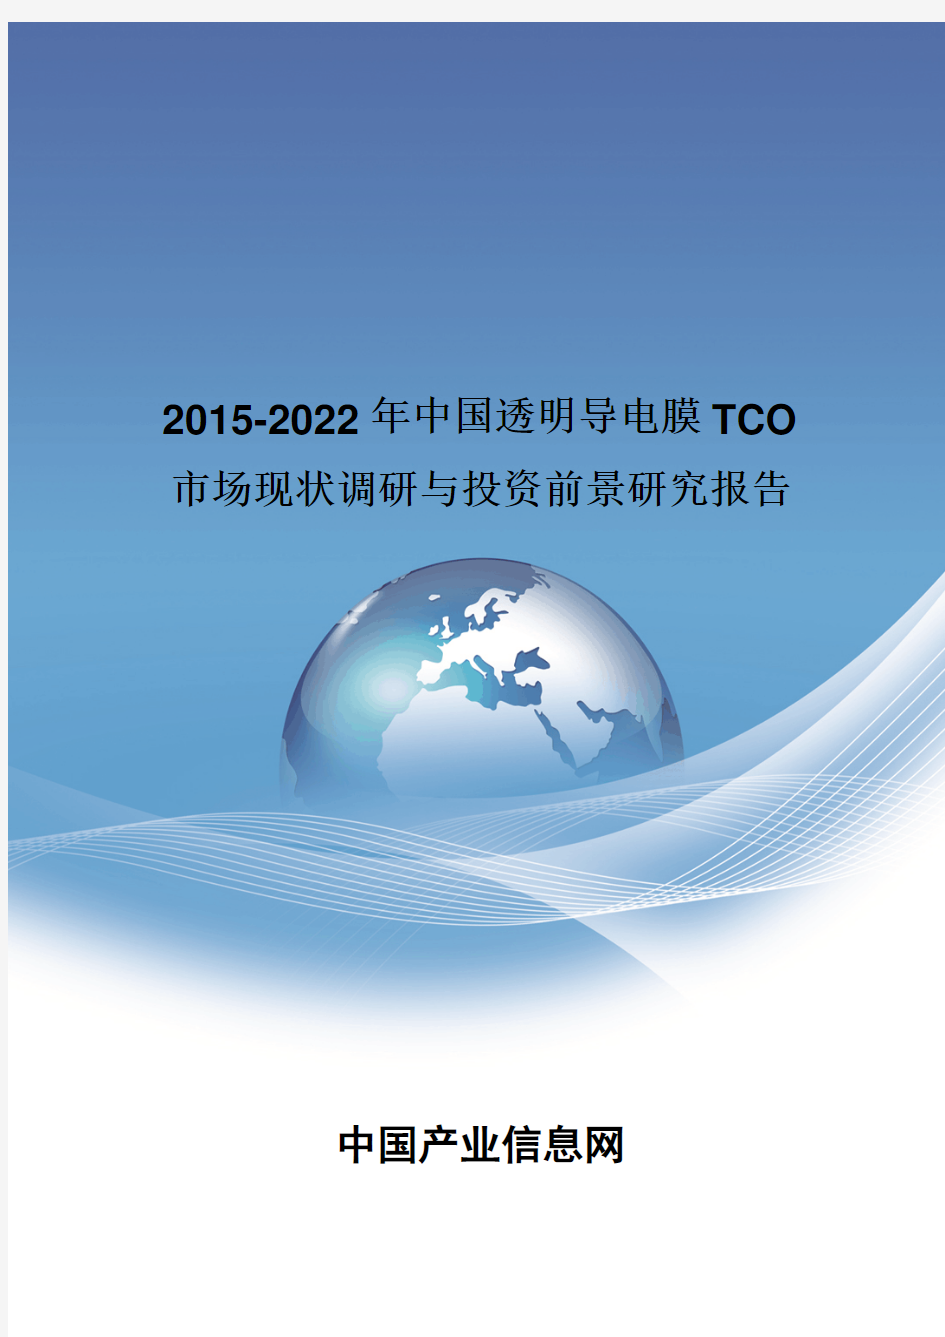 2015-2022年中国透明导电膜TCO市场现状调研报告